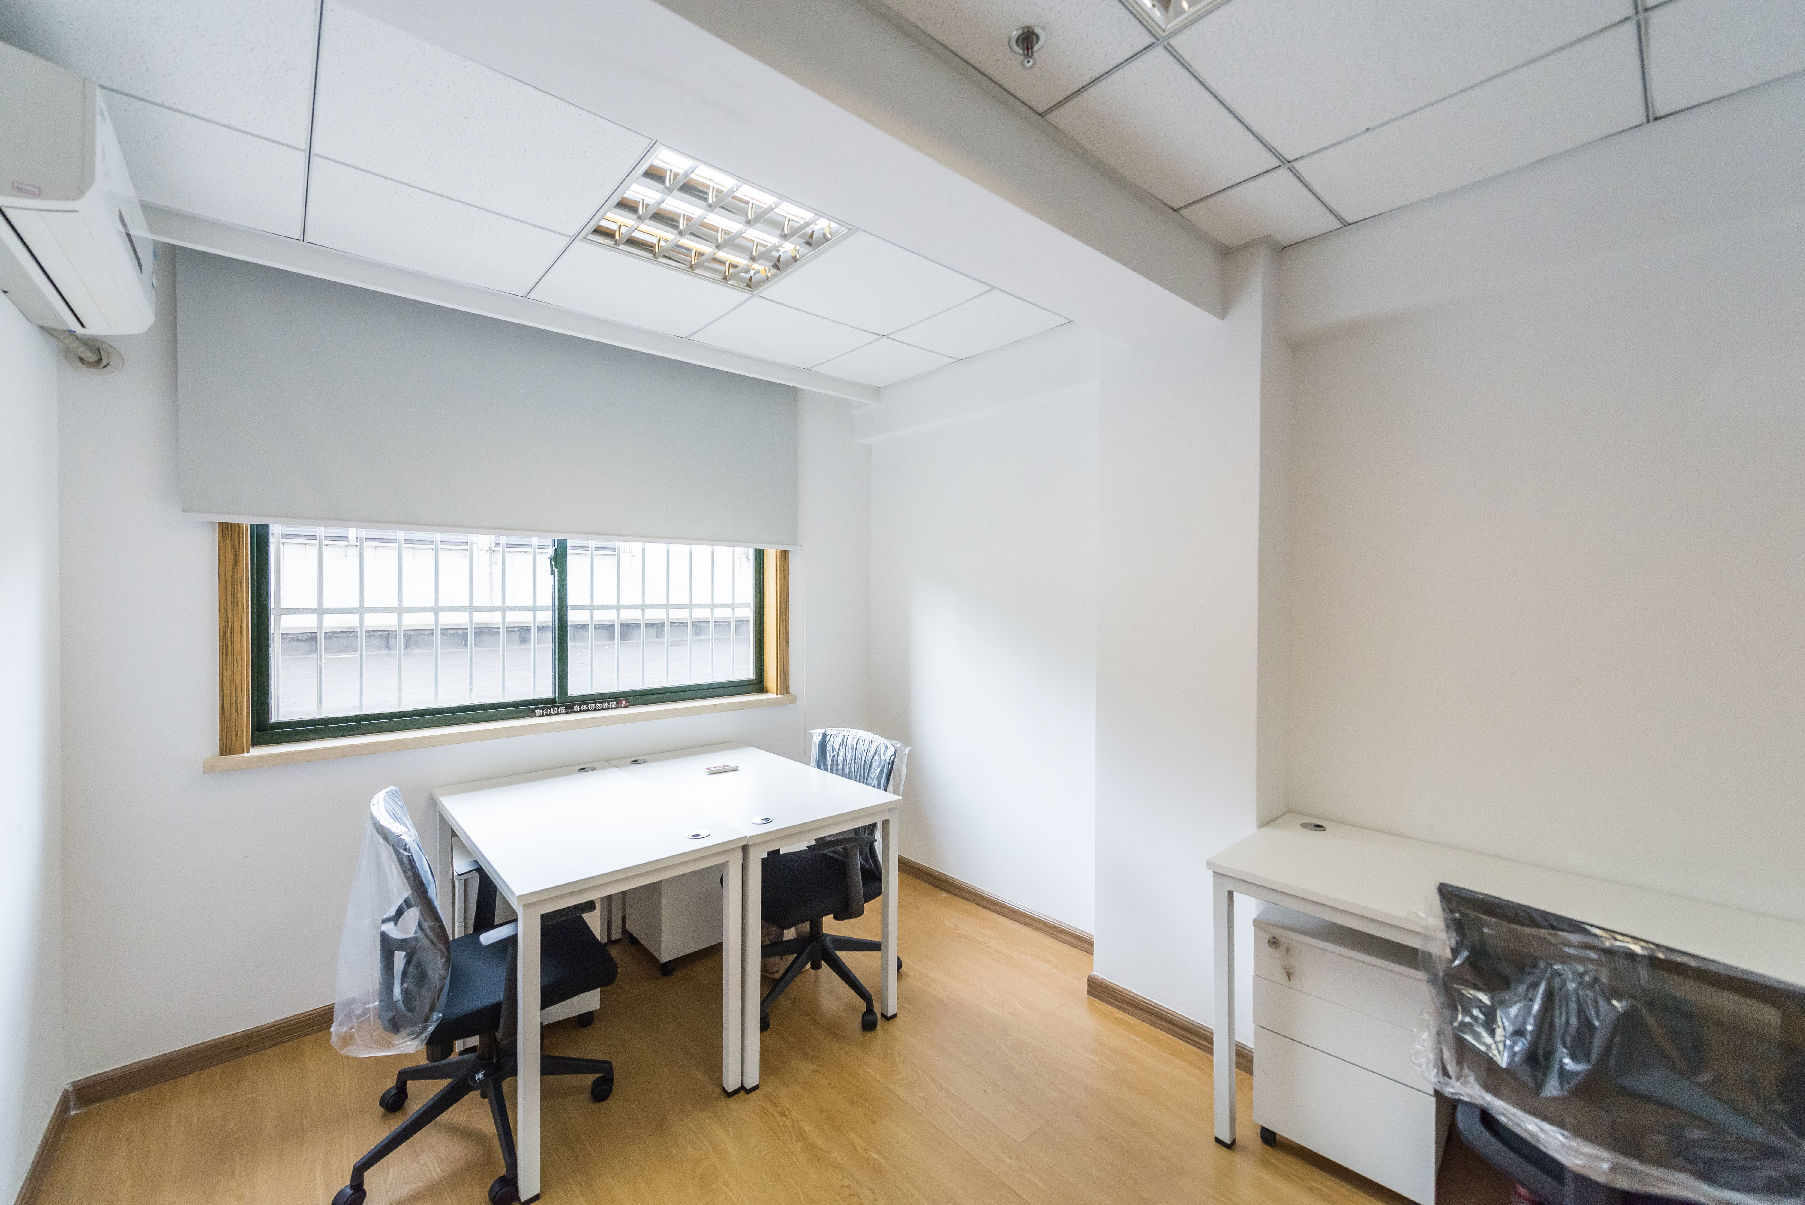 静安创业园区251平米办公室出租_4.40元/m²/天